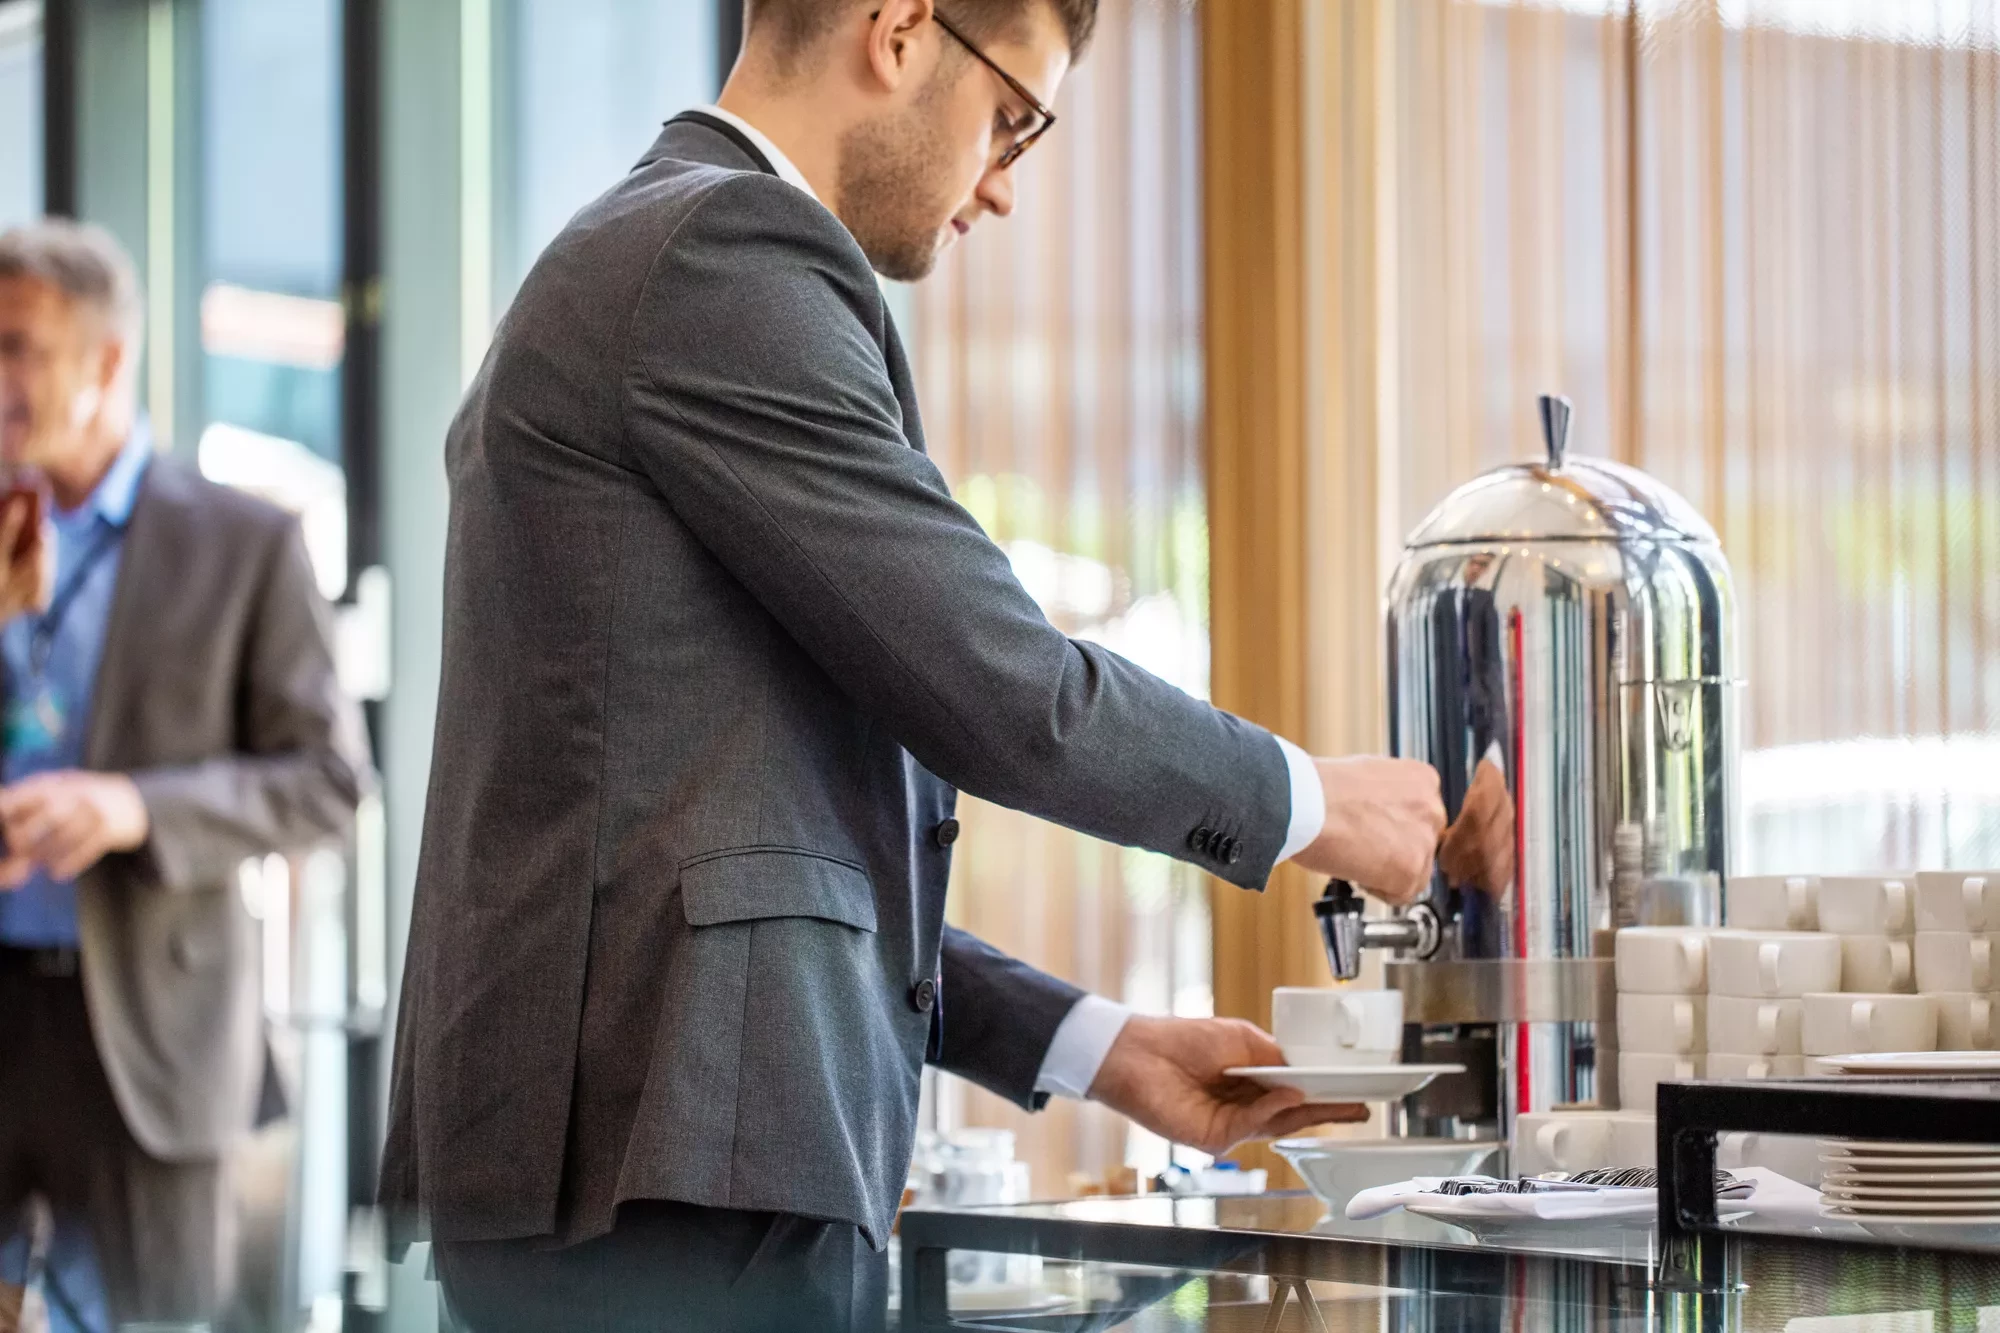 Автоматические кофемашины для бизнеса: аренда или покупка?